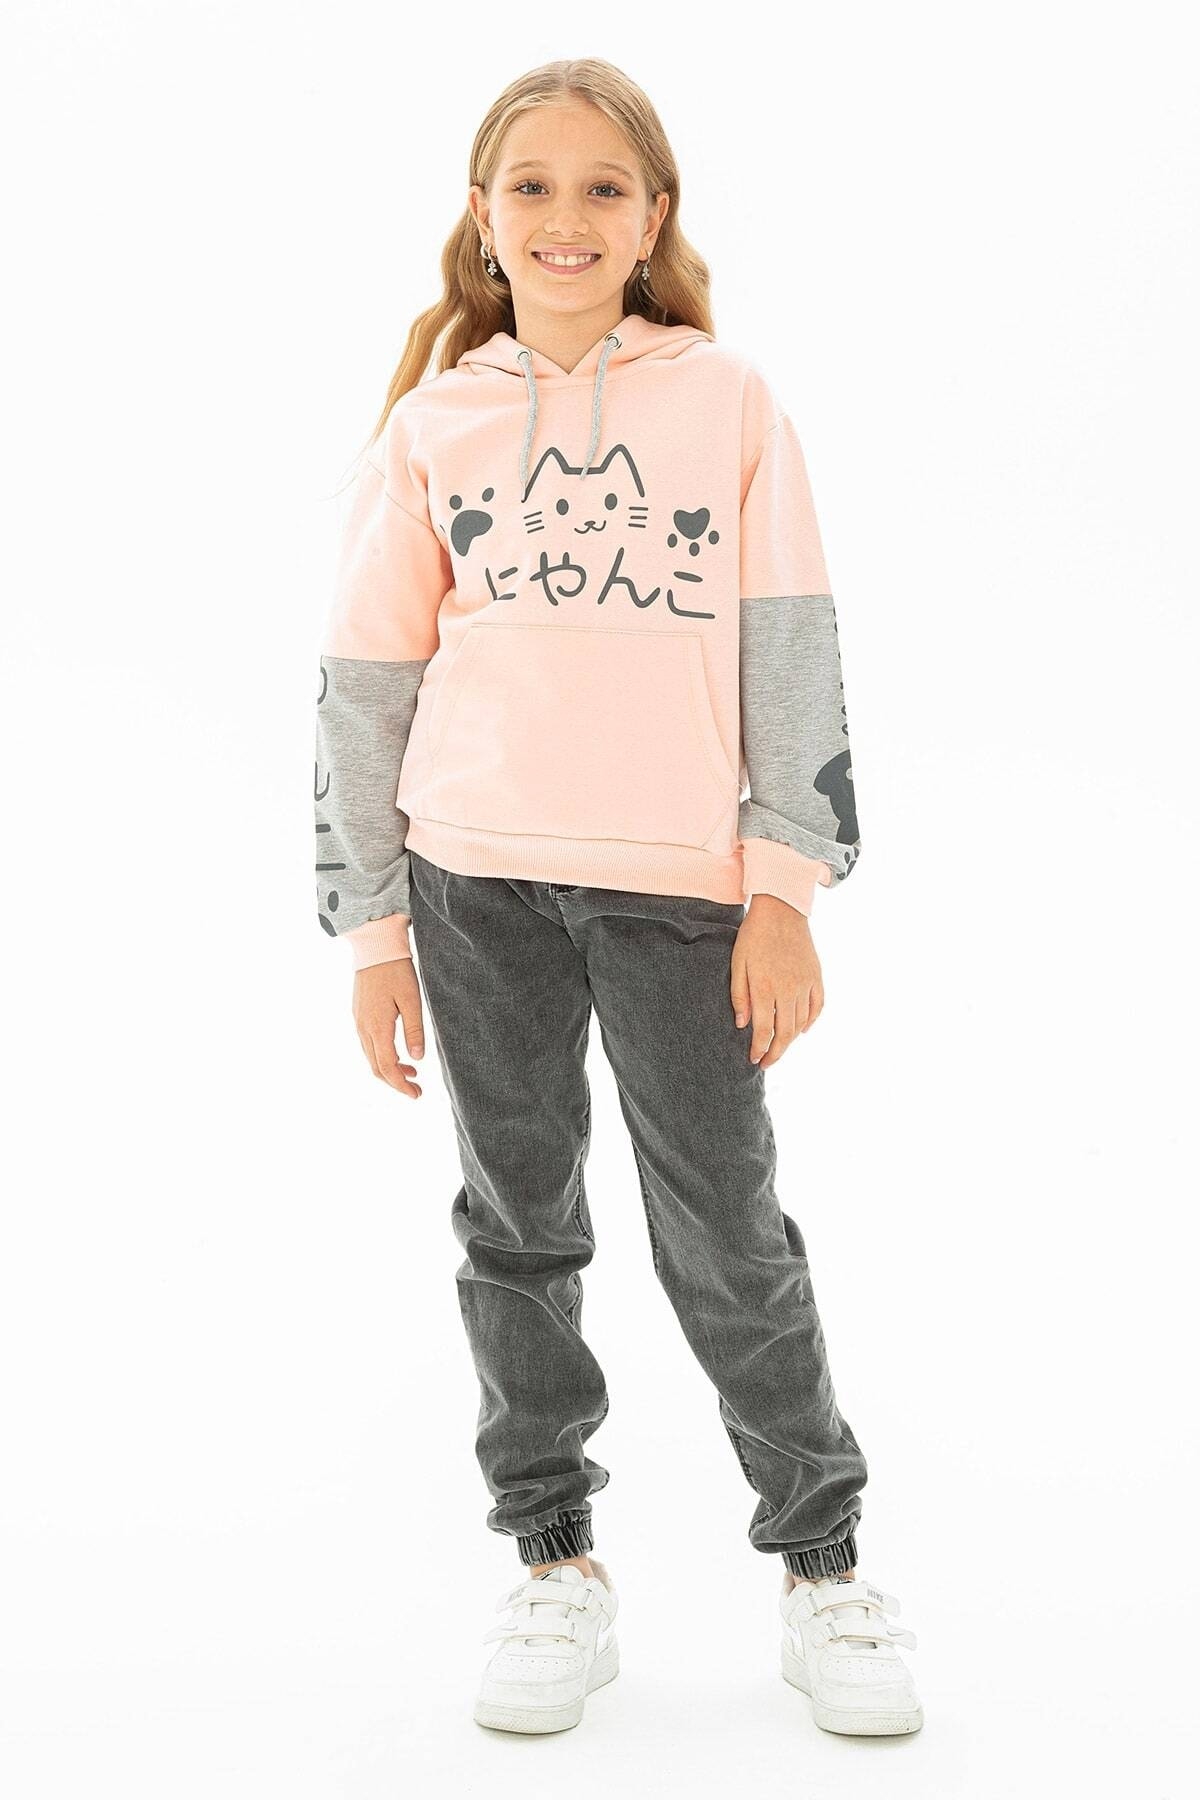 Levně zepkids Girls' Cat Printed Kangaroo Pocket Sweatshirt.